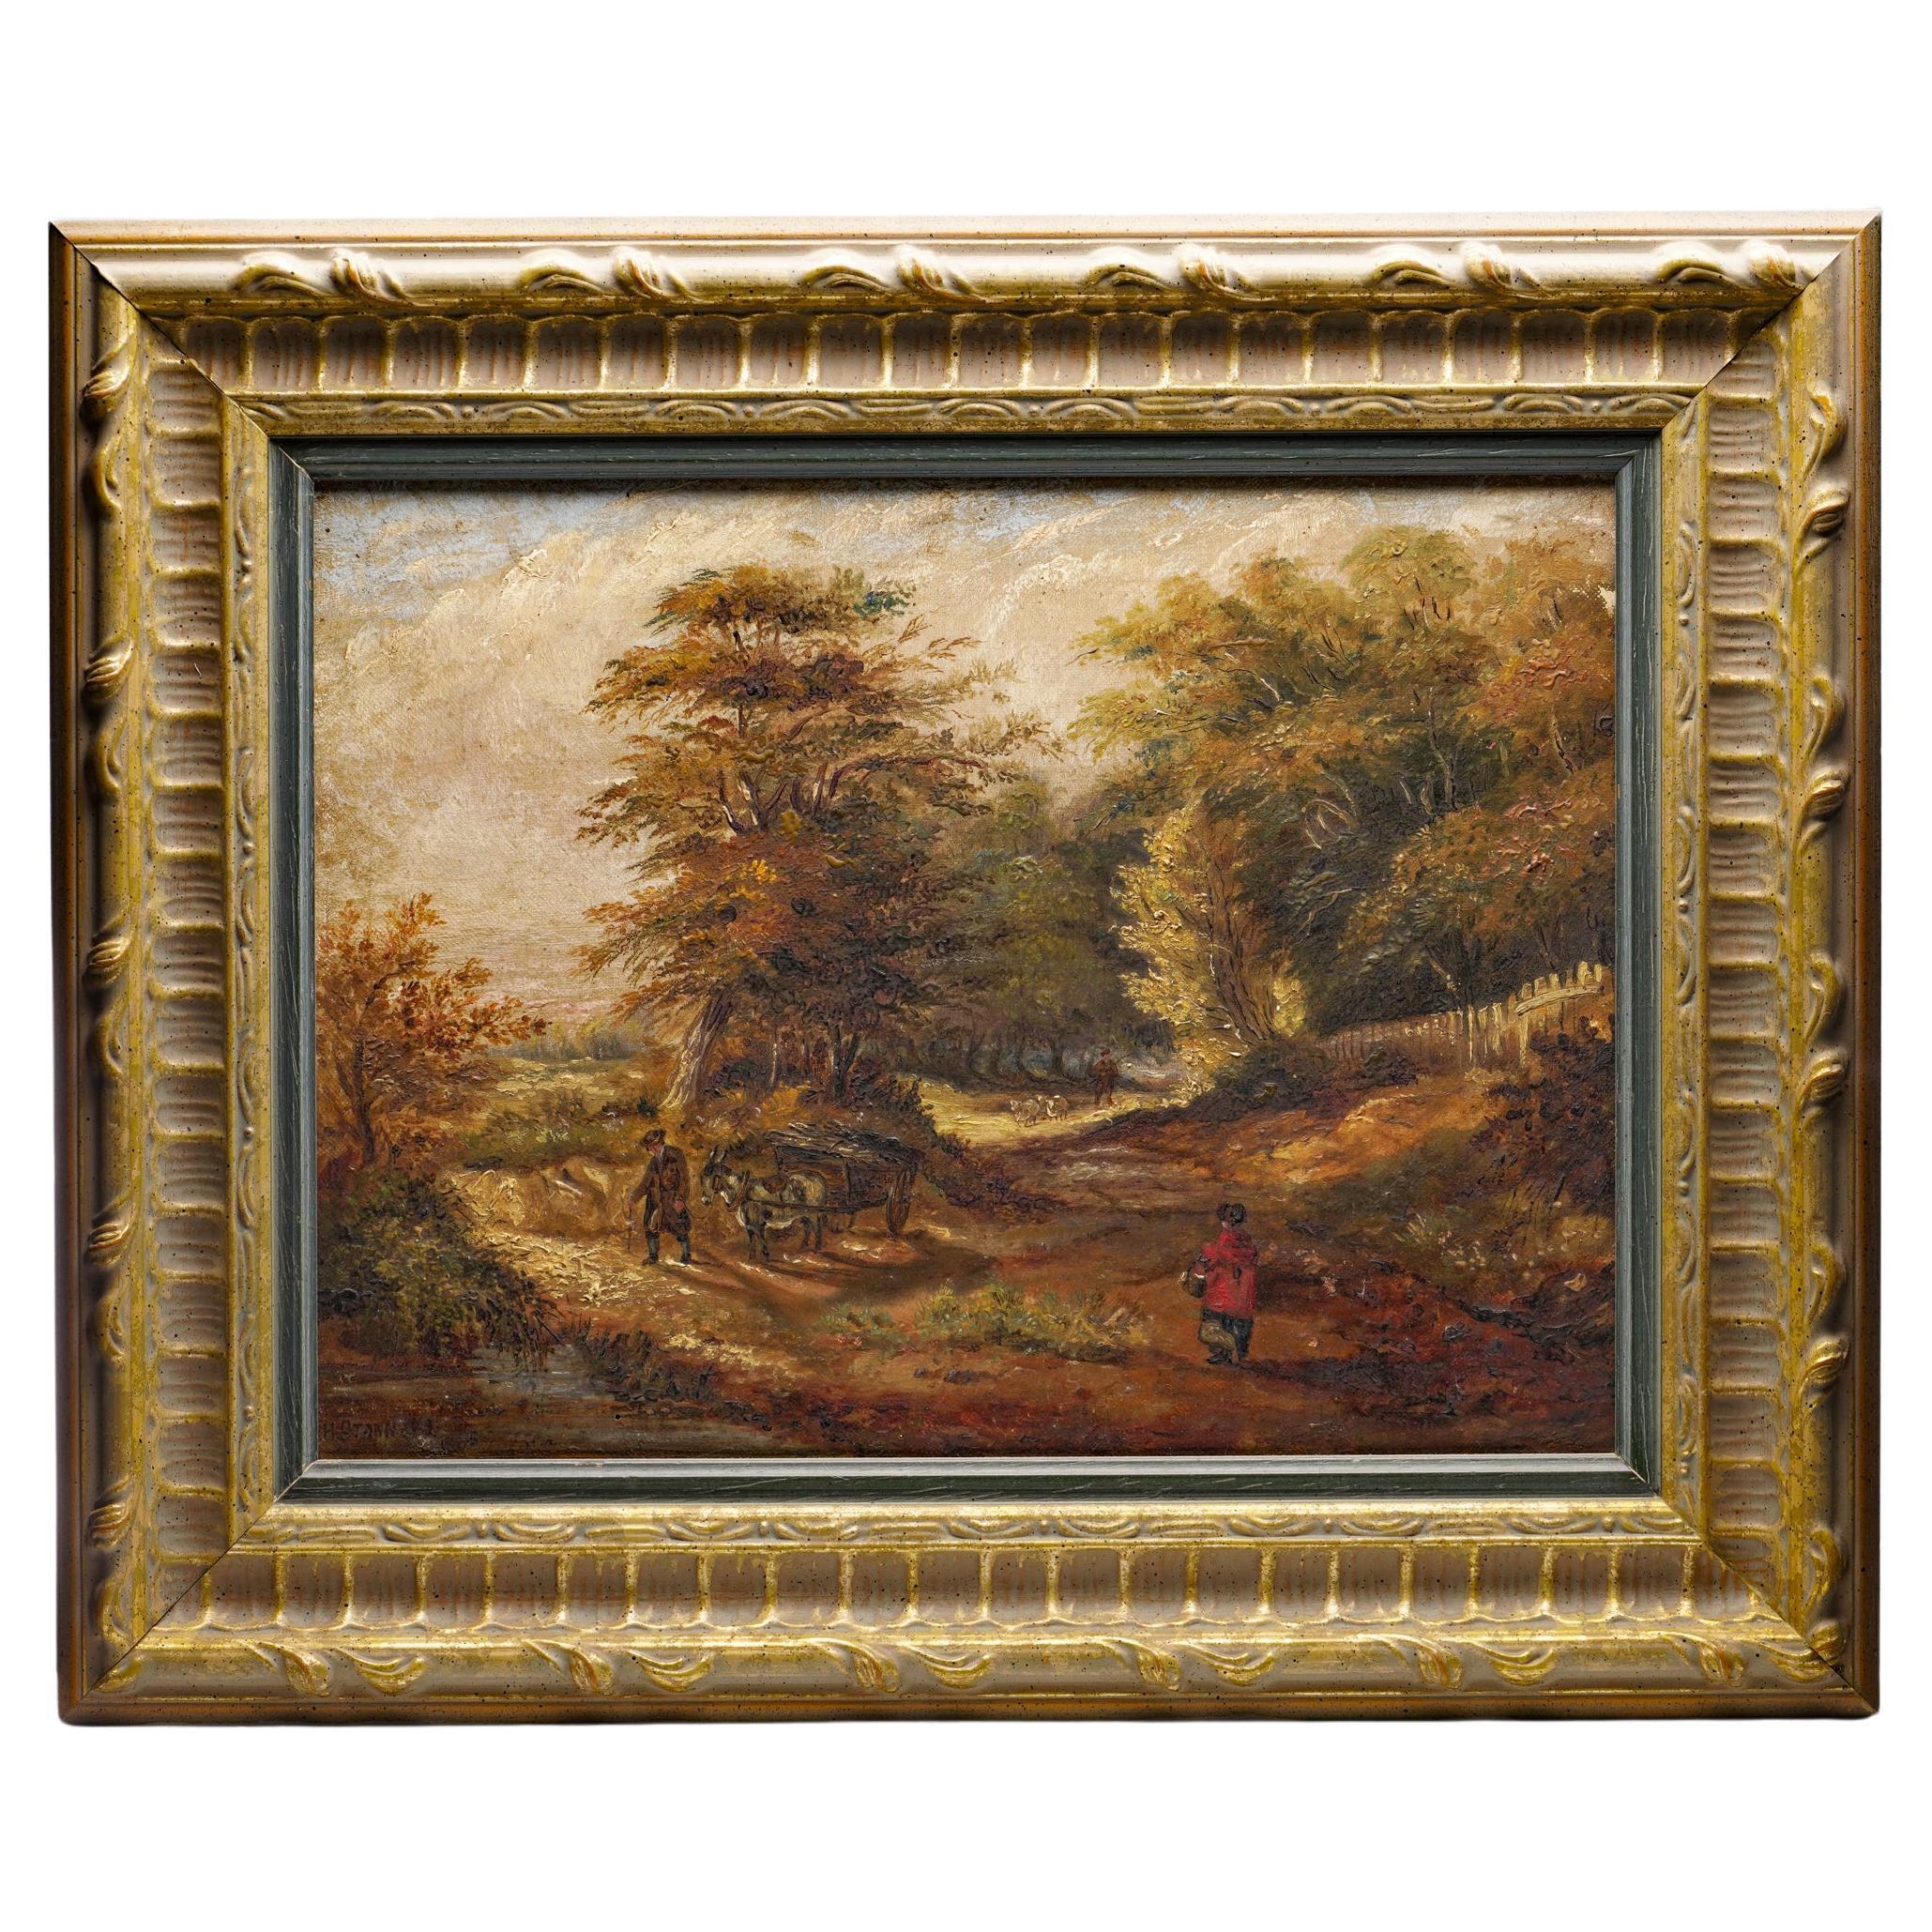 H. Stannava, Ölgemälde auf Leinwand mit ländlicher Szene, 19. Jahrhundert